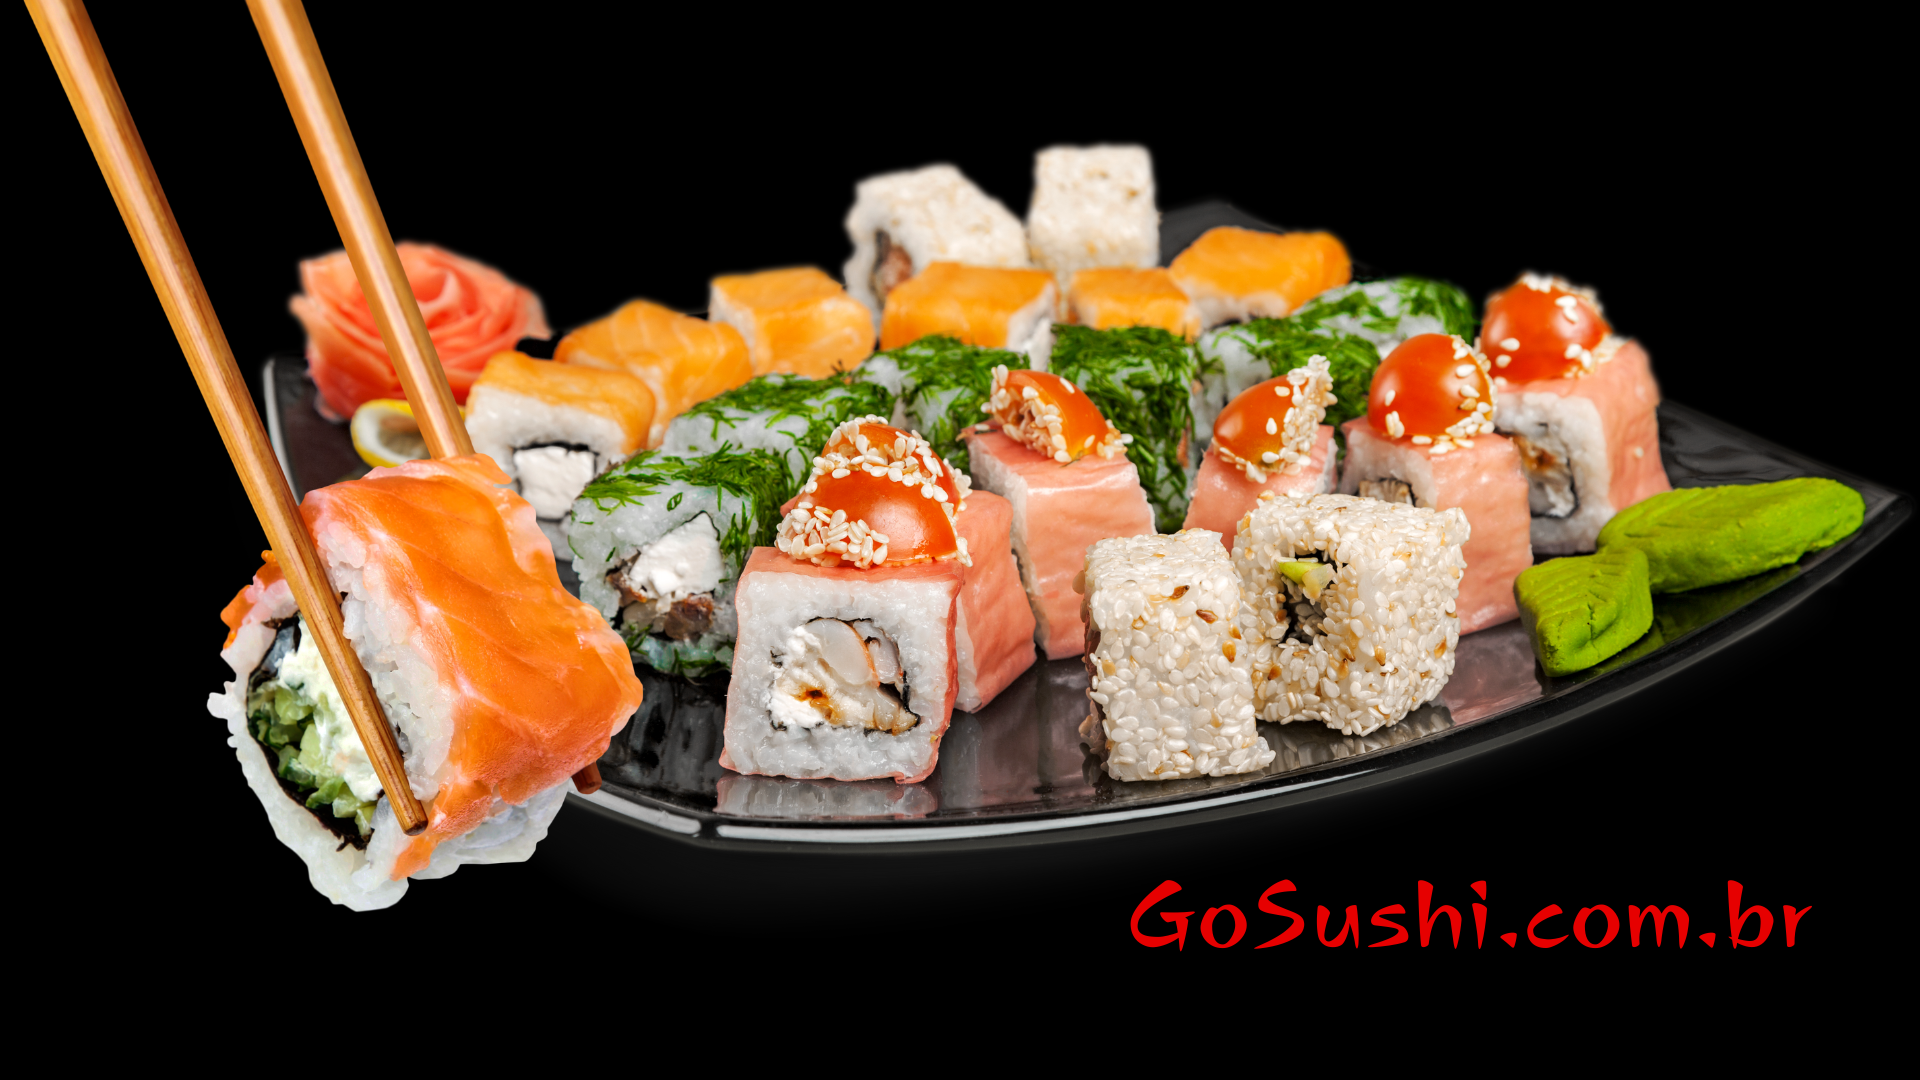 Go Sushi.com.br_